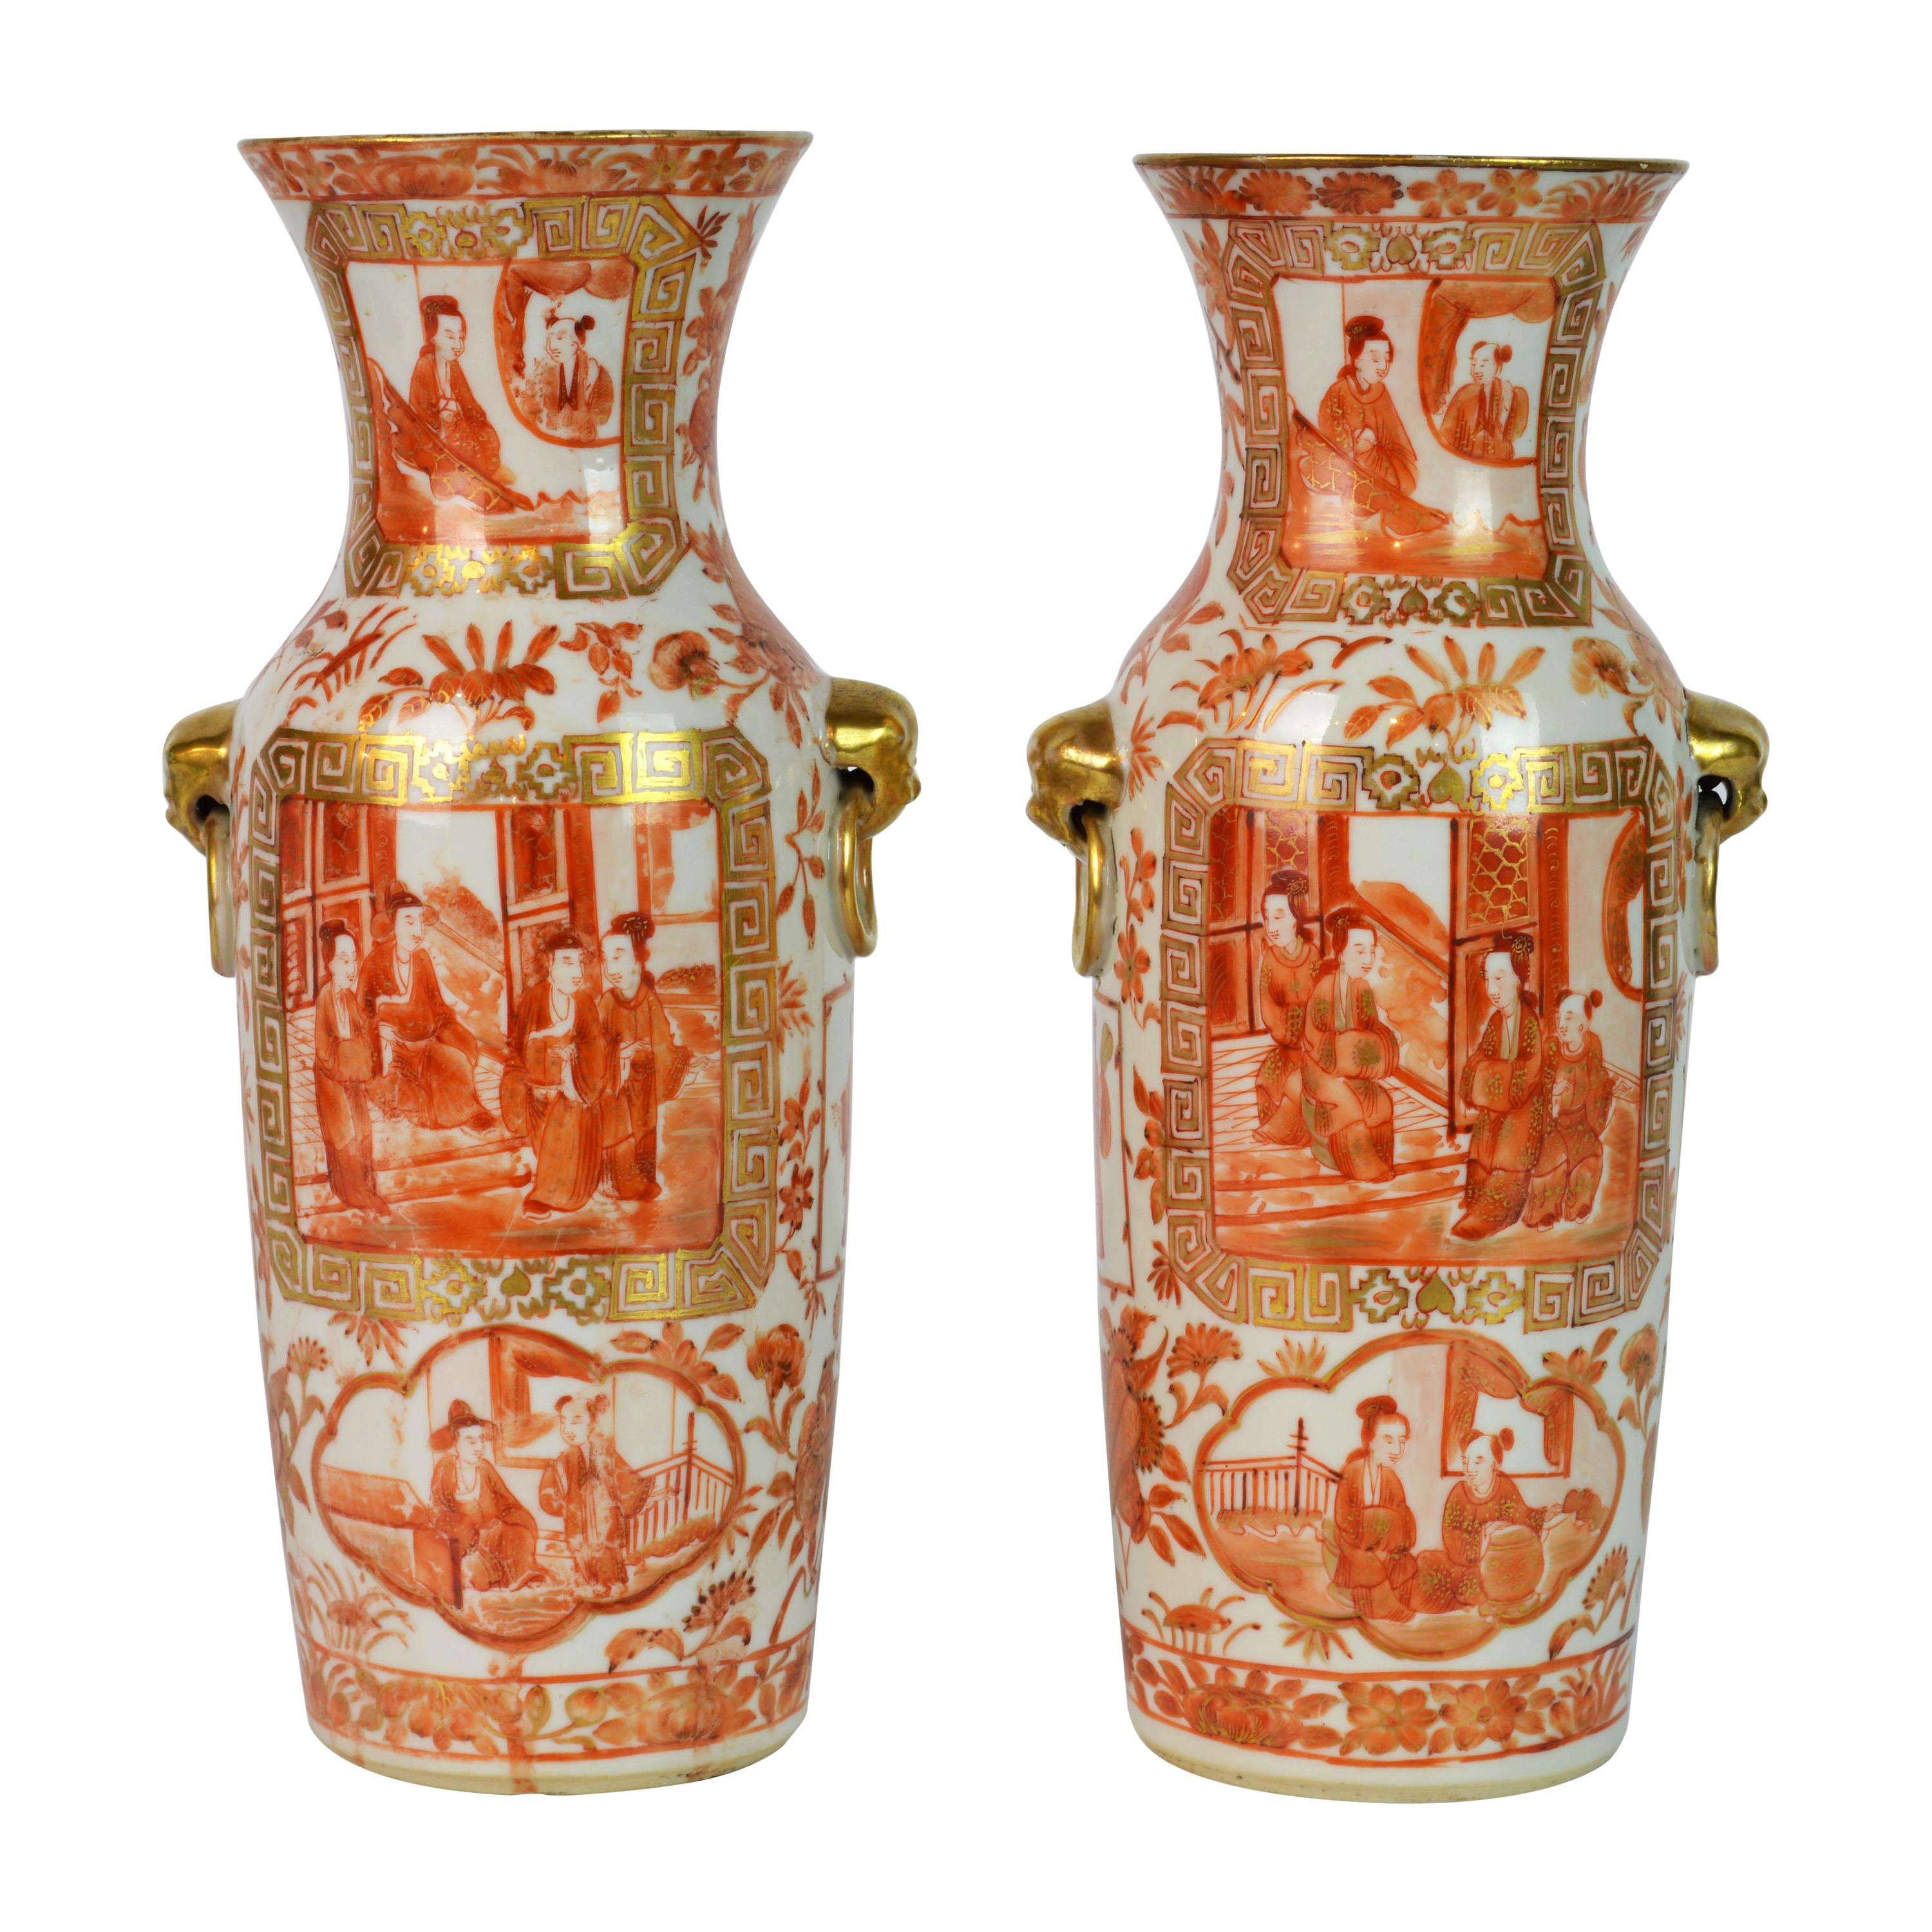 Seltene orangefarbene und vergoldete chinesische Export-Daoguang-Vasen des 19. Jahrhunderts, Paar